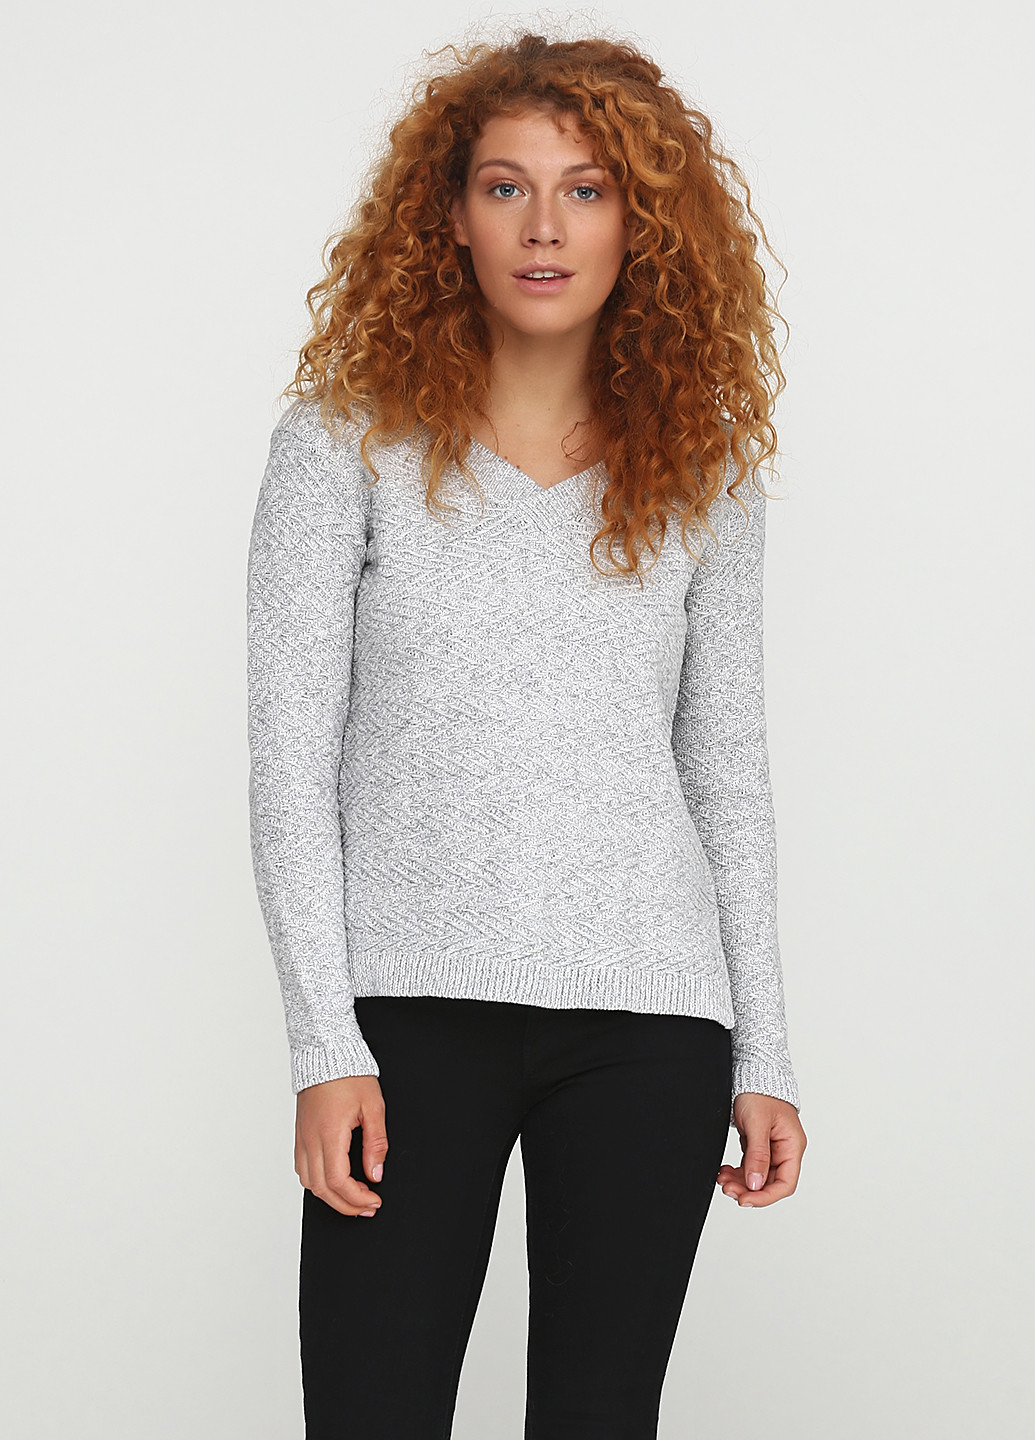 Светло-серый демисезонный пуловер пуловер Kiabi